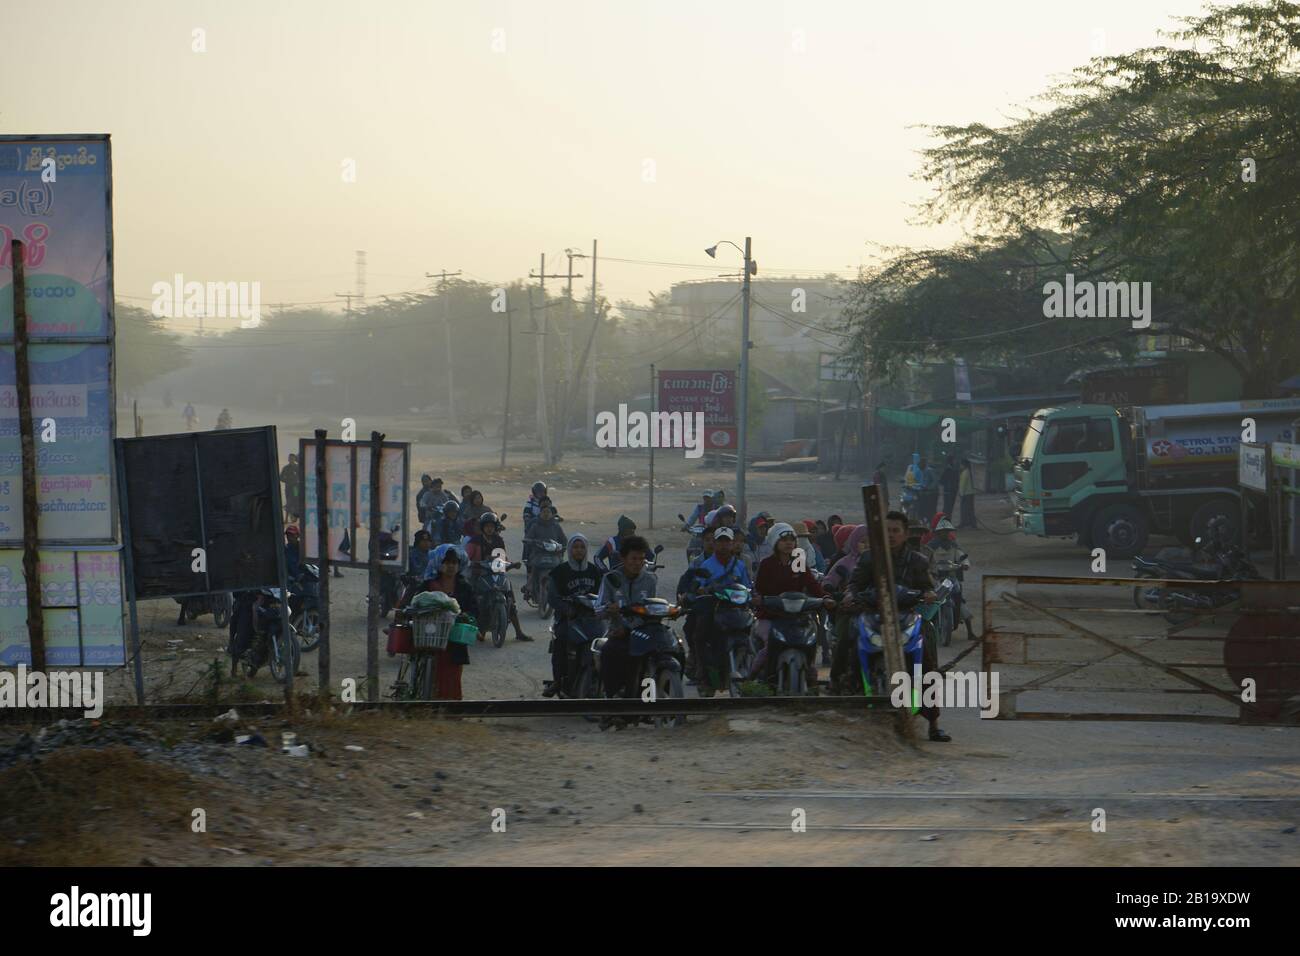 Menschen auf Motorrädern warten vor Bahnschranke, Zugstrecke von Yangon nach Mandalay, Myanmar Foto Stock